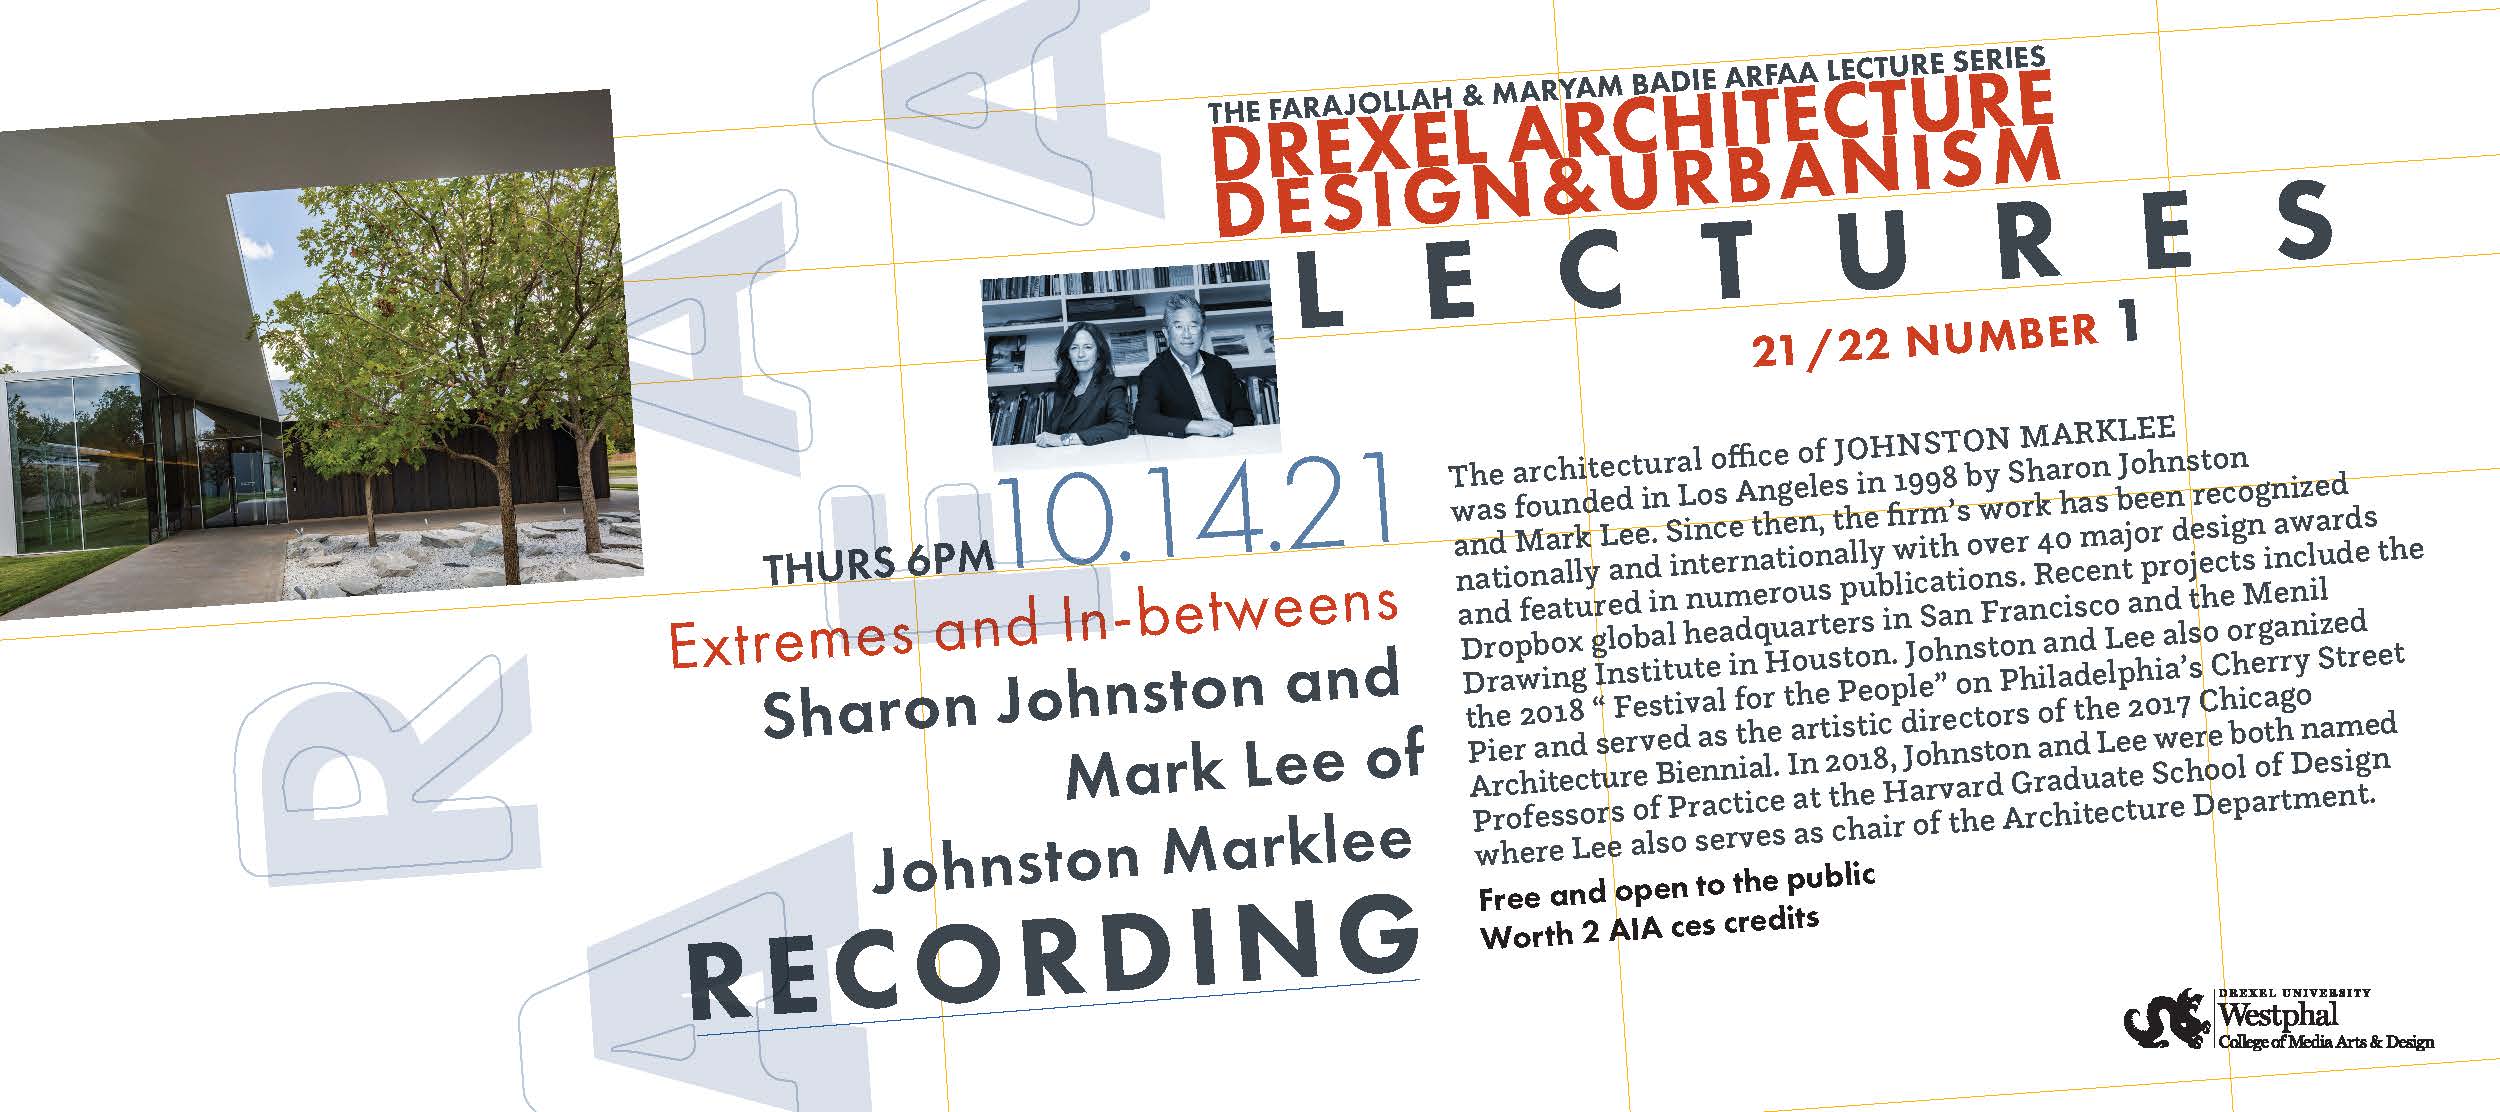 ARFAA Lecture Series 21-22 Johnston Marklee Recording